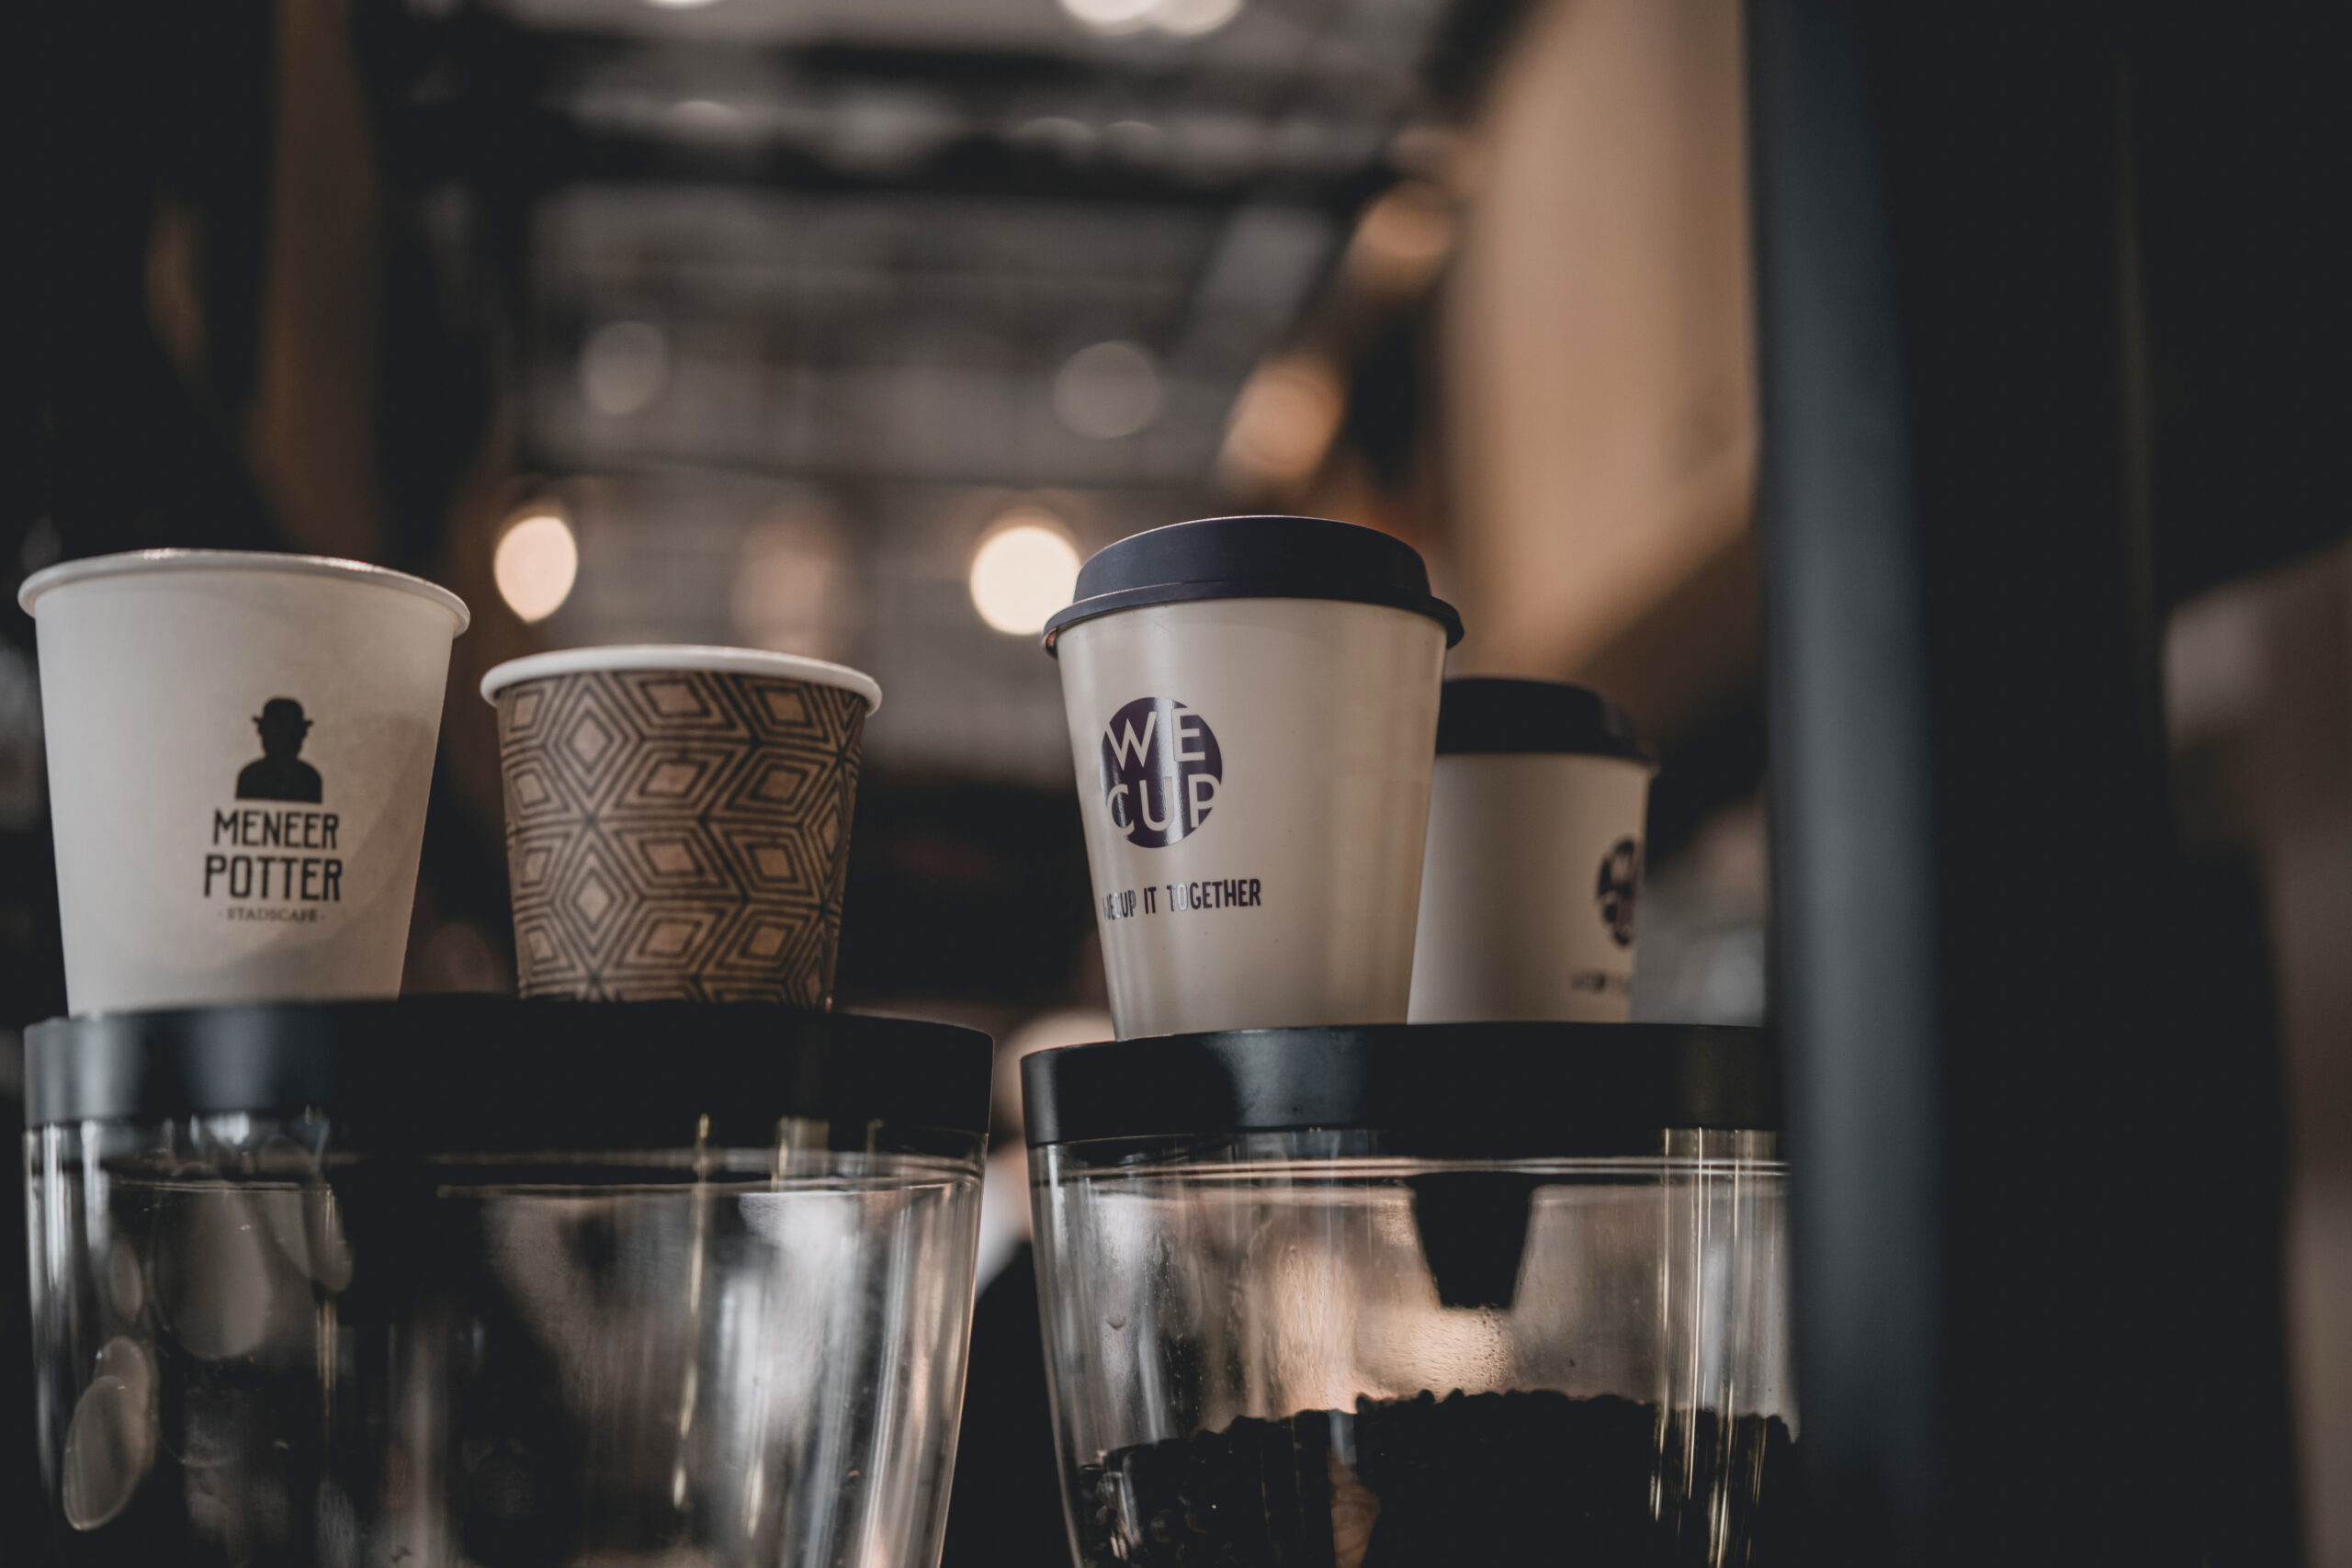 De herbruikbare koffiebekers van startup WeCup.